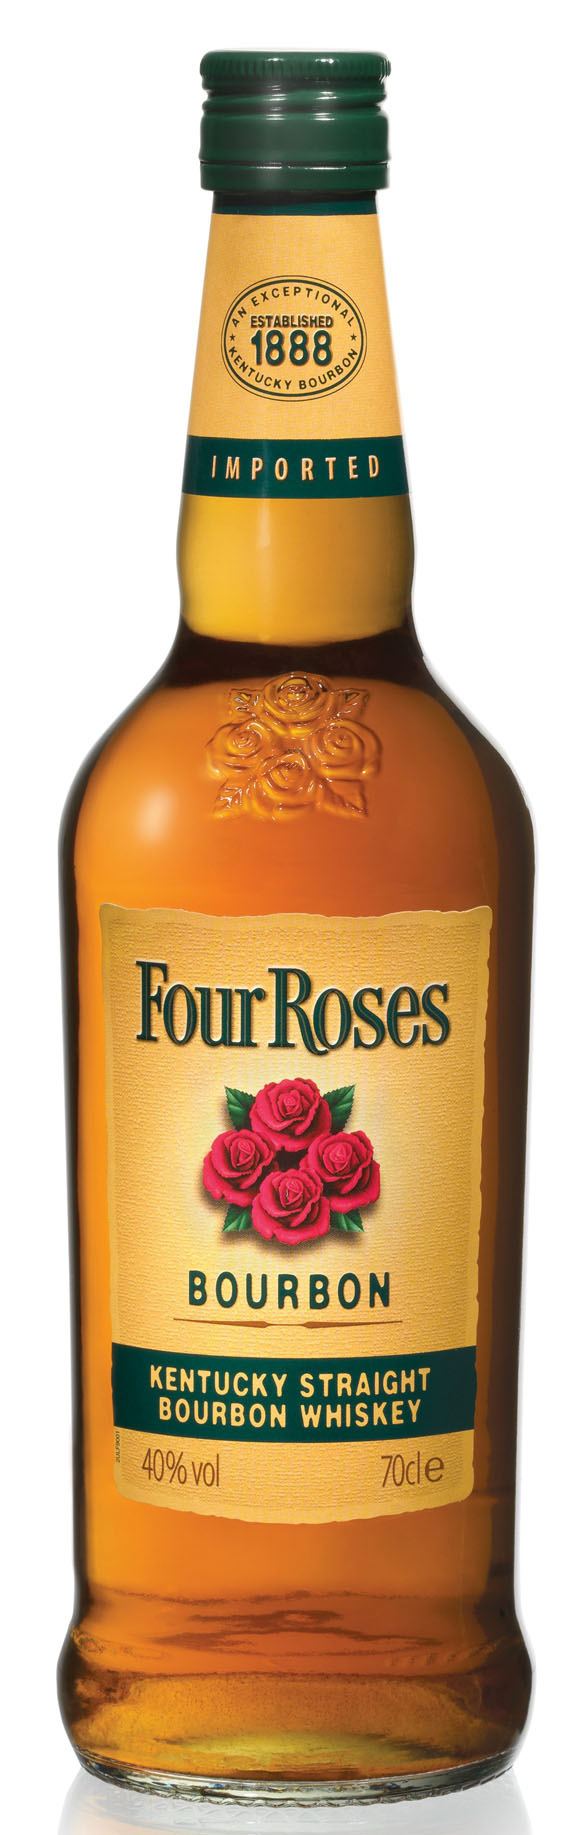 Four Roses Four Roses Bourbons The Pegu Blog